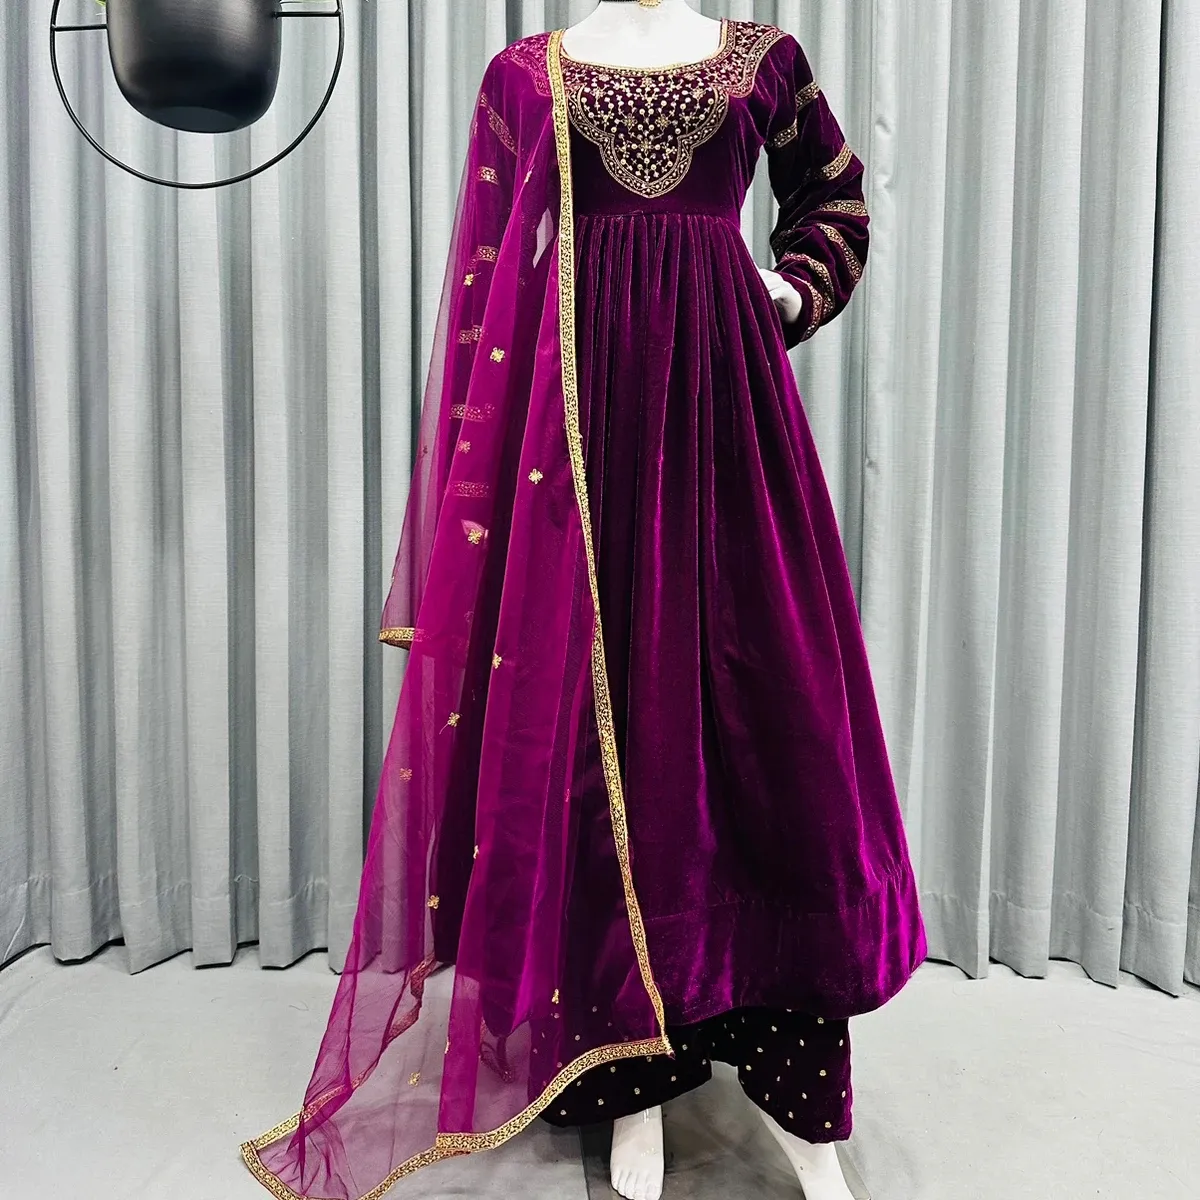 FULPARI tasarımcı kış koleksiyonu kadife nakış Salwar Kameez hindistan'dan düğün ve parti giyim için uygun